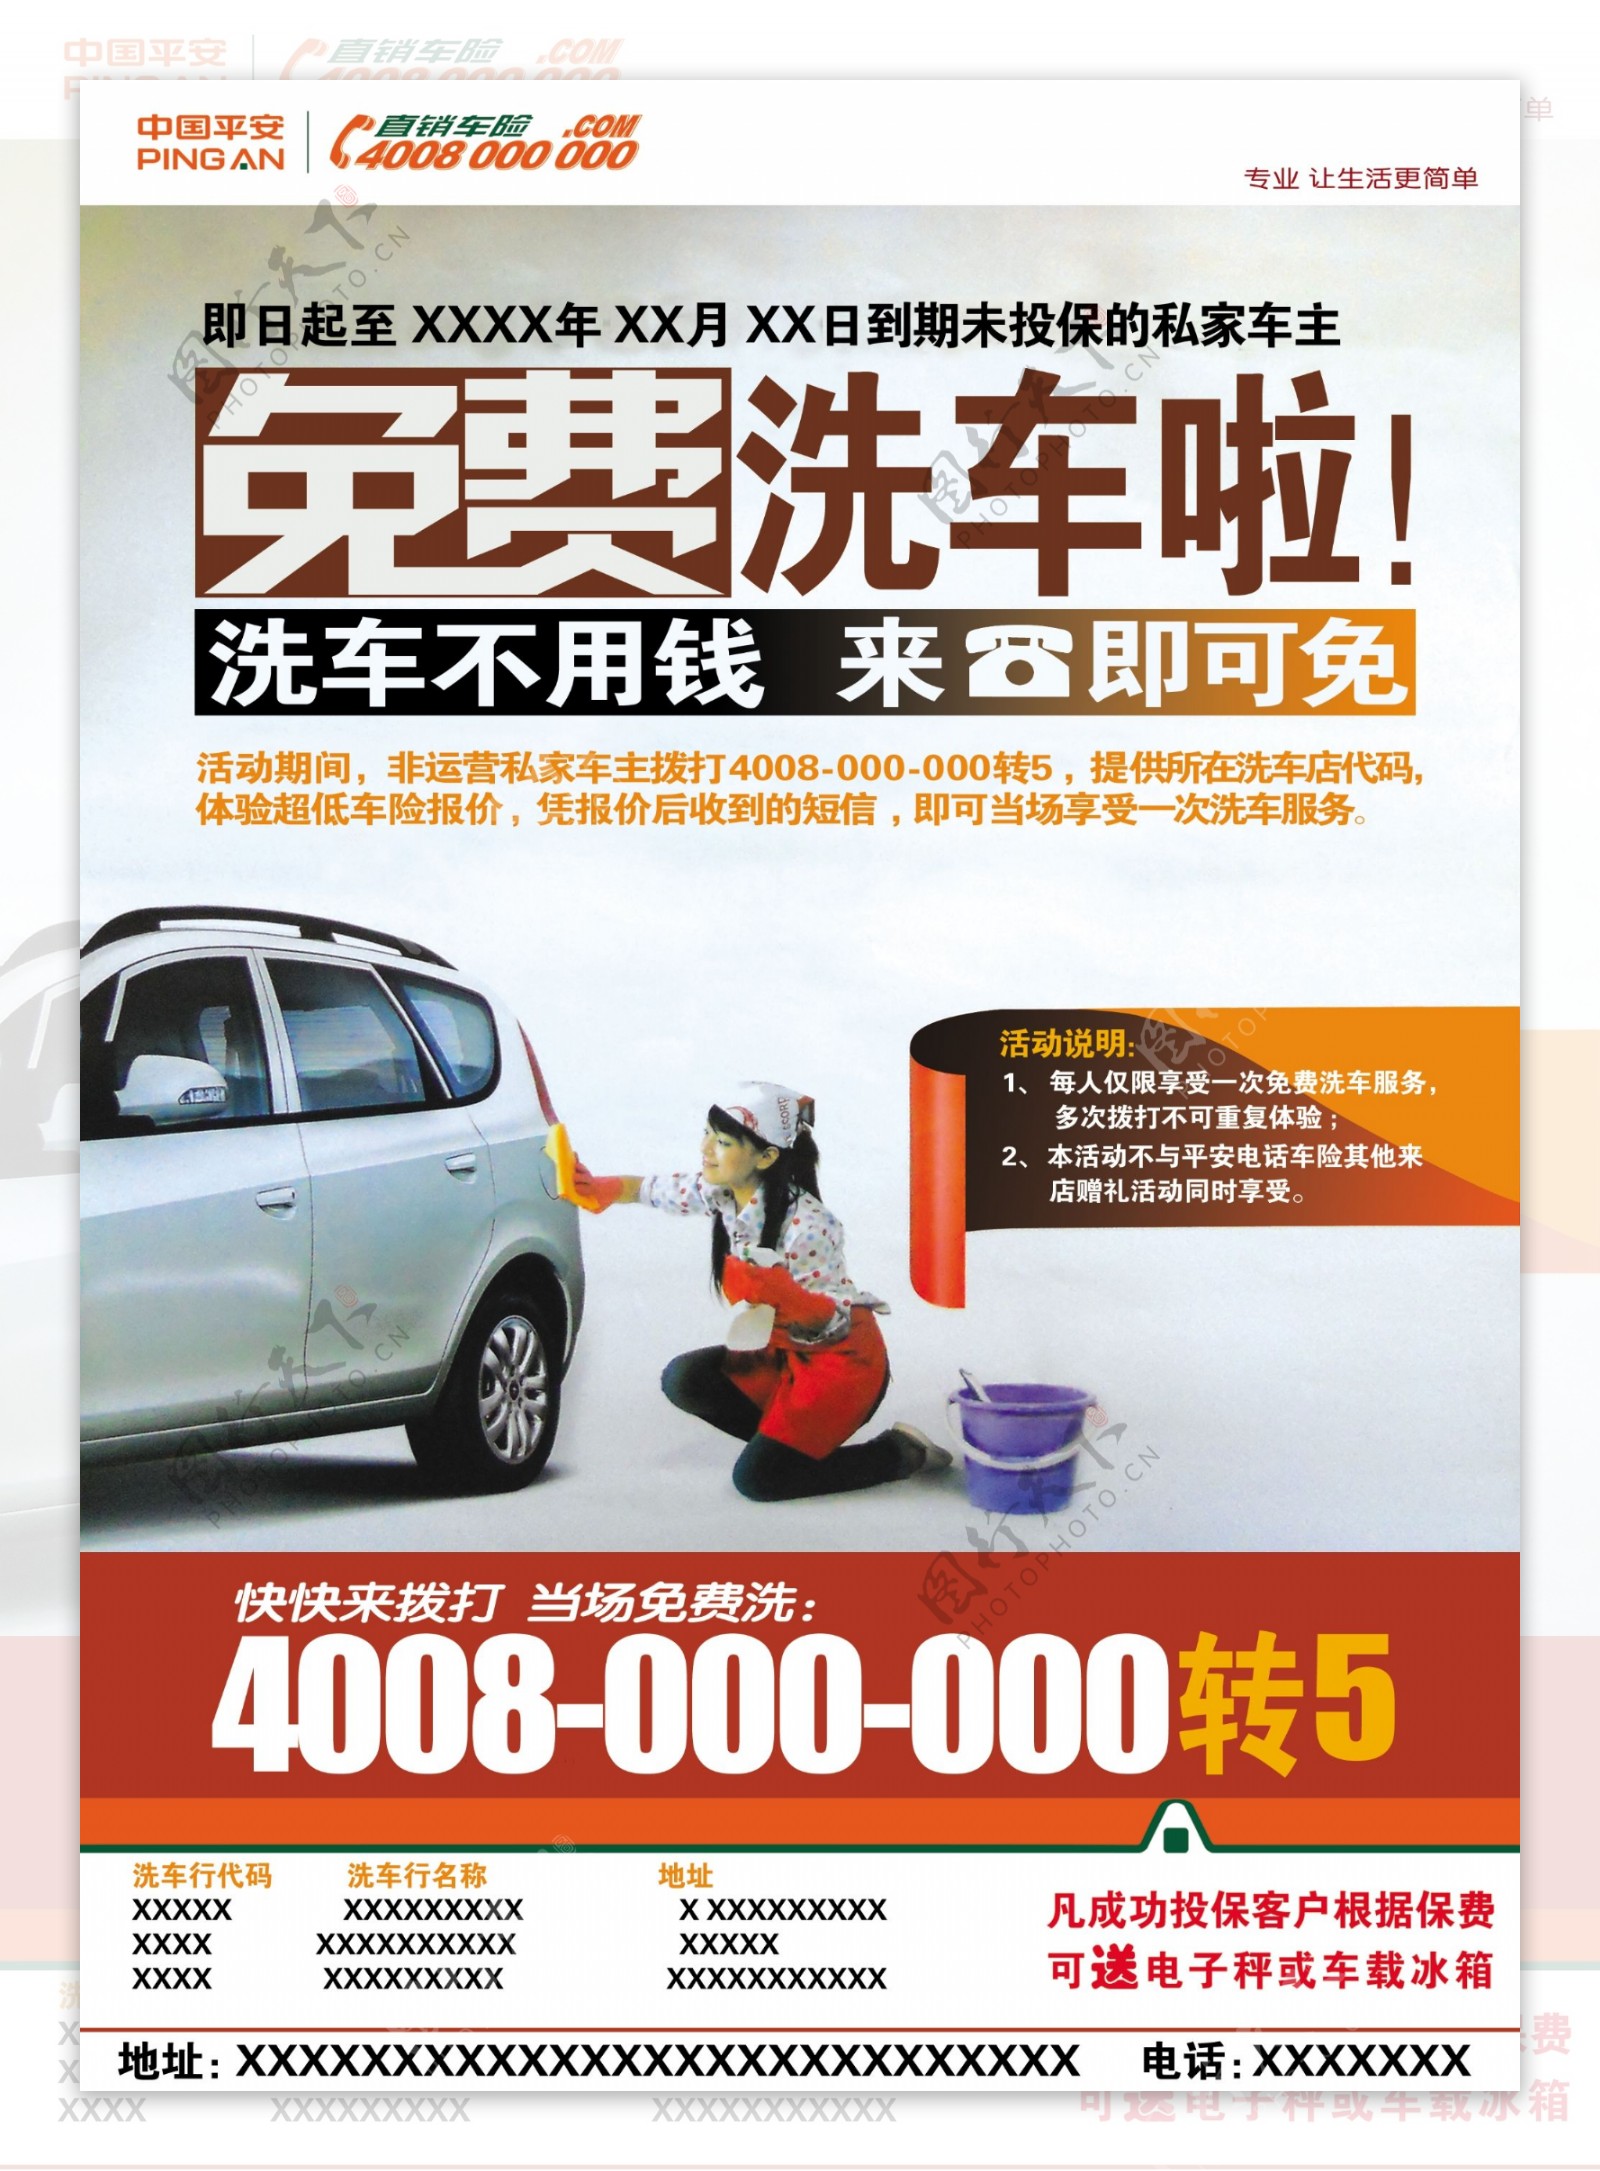 中国平安车险免费洗车图片